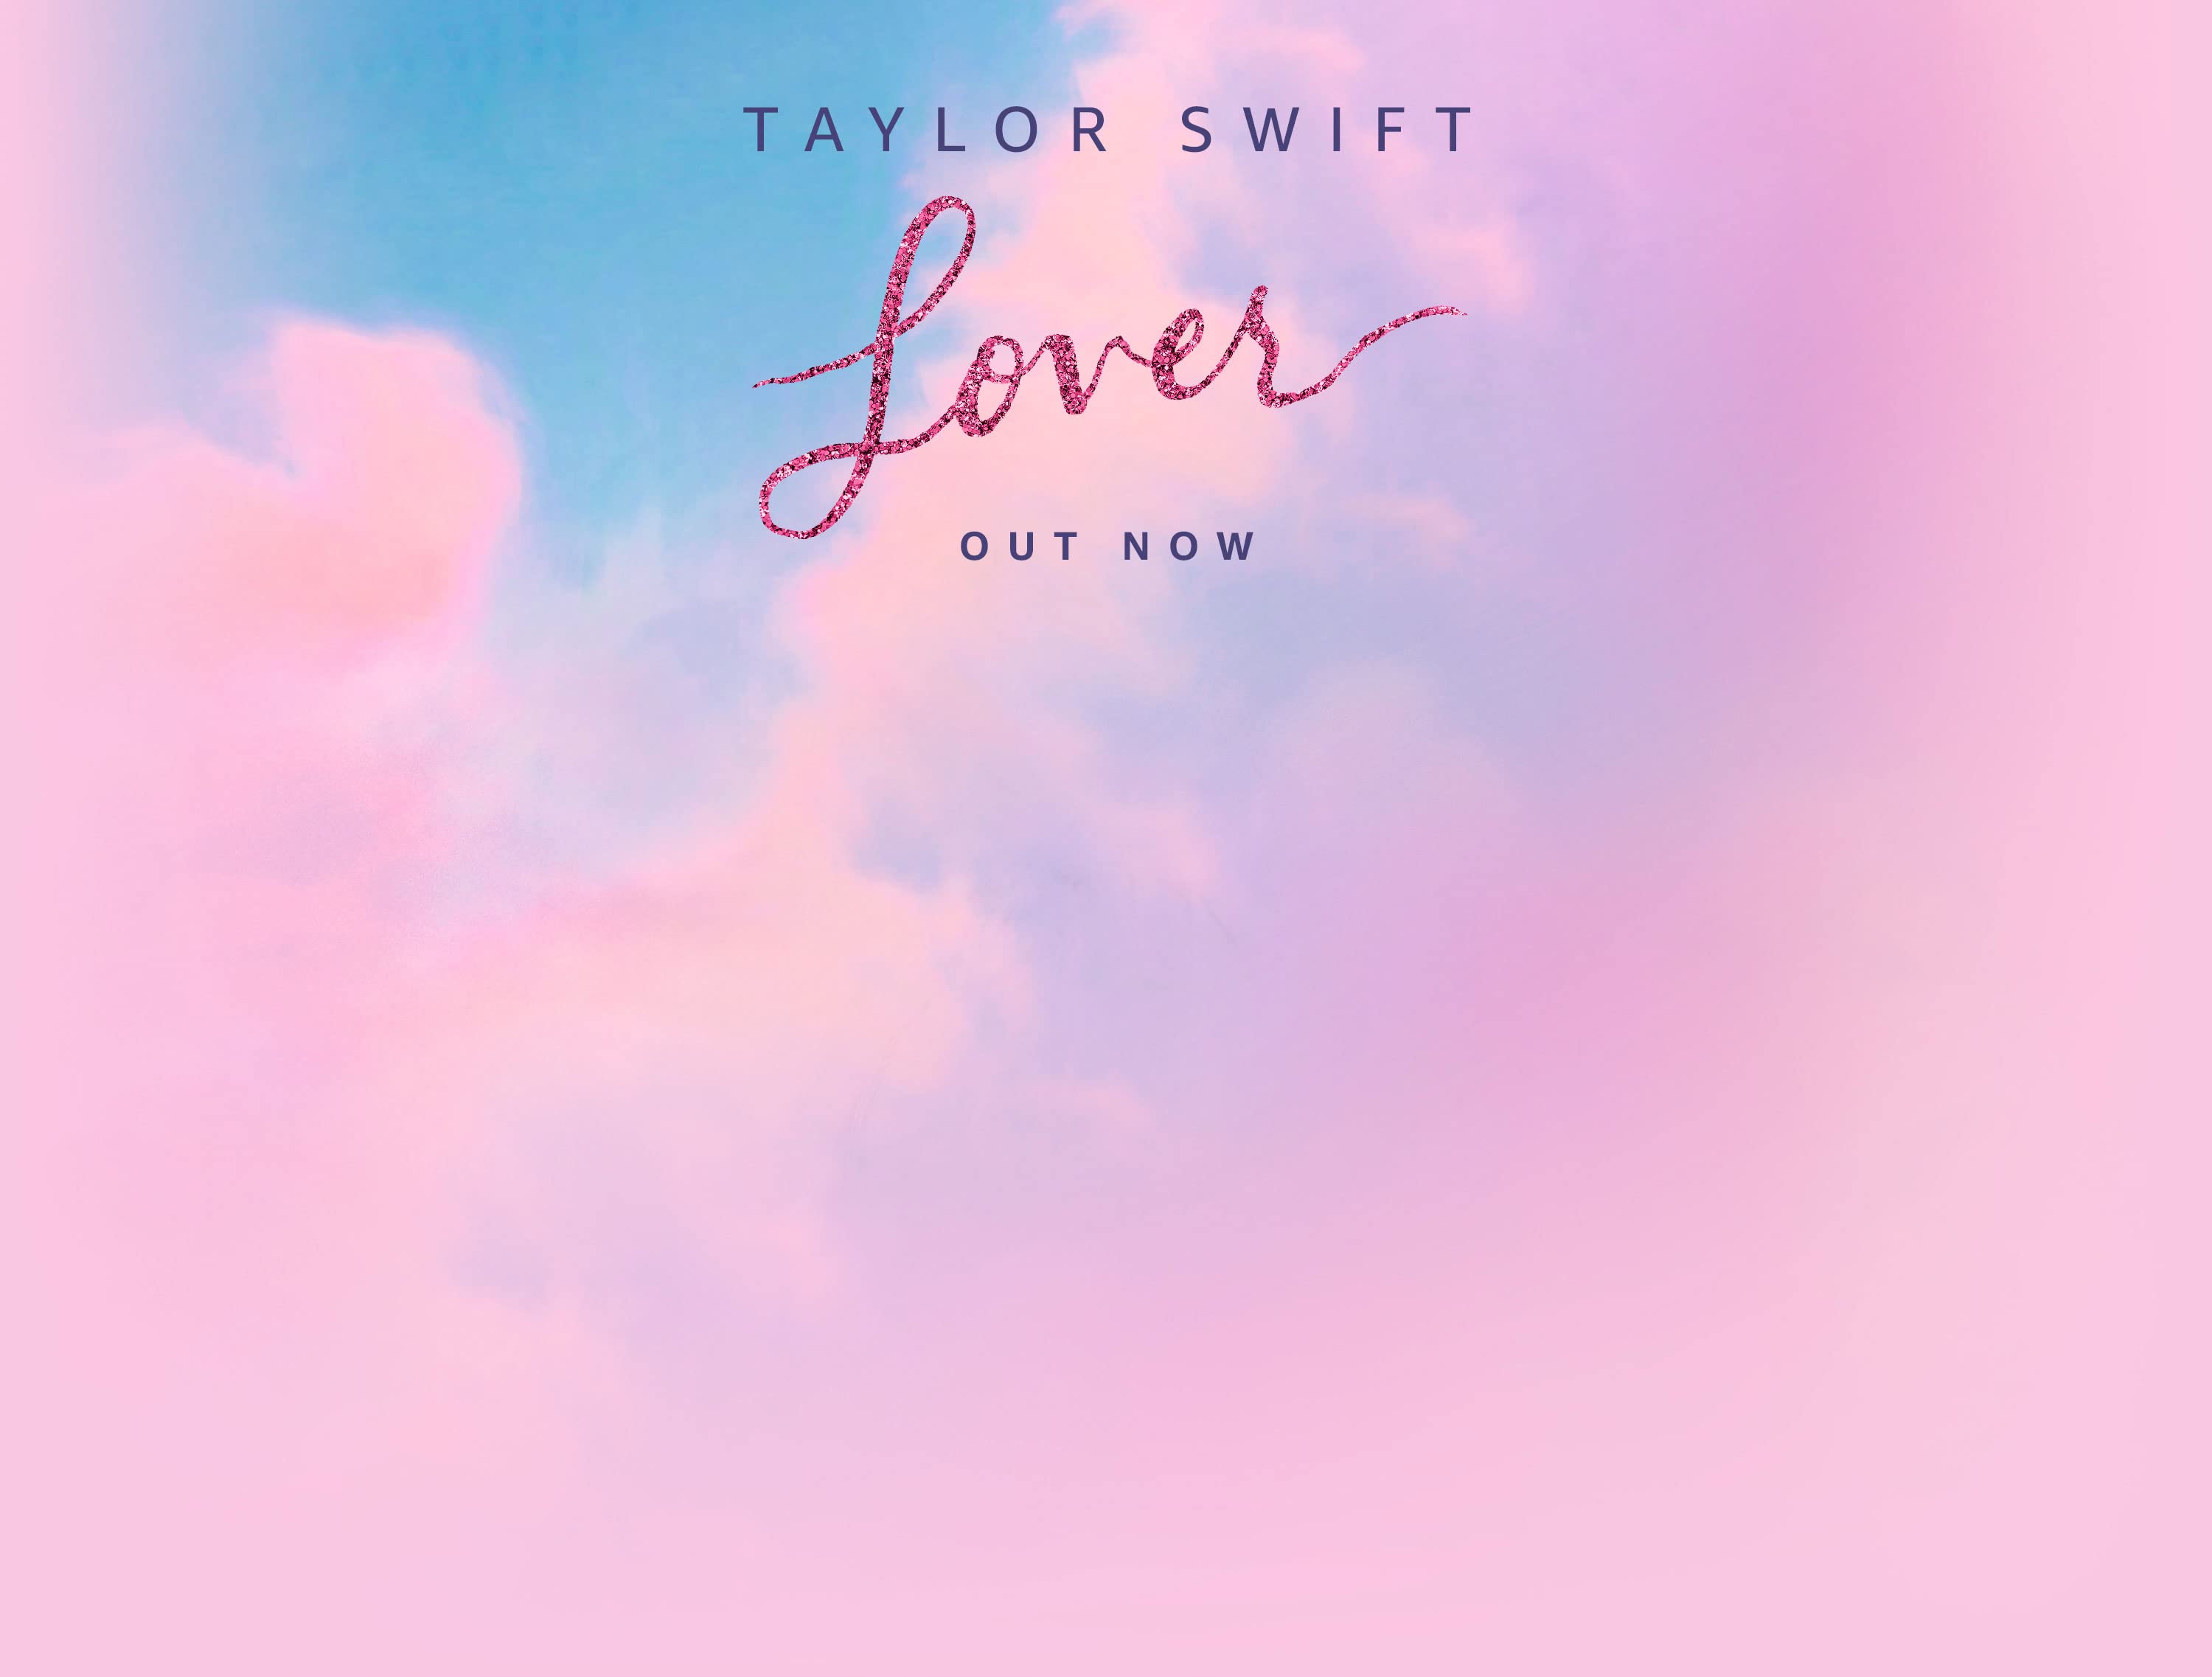 Taylor Swift in 4k on Twitter RED Taylors Version 4k Desktop Wallpaper  httpstcoFS9rGr7Cu7  Twitter